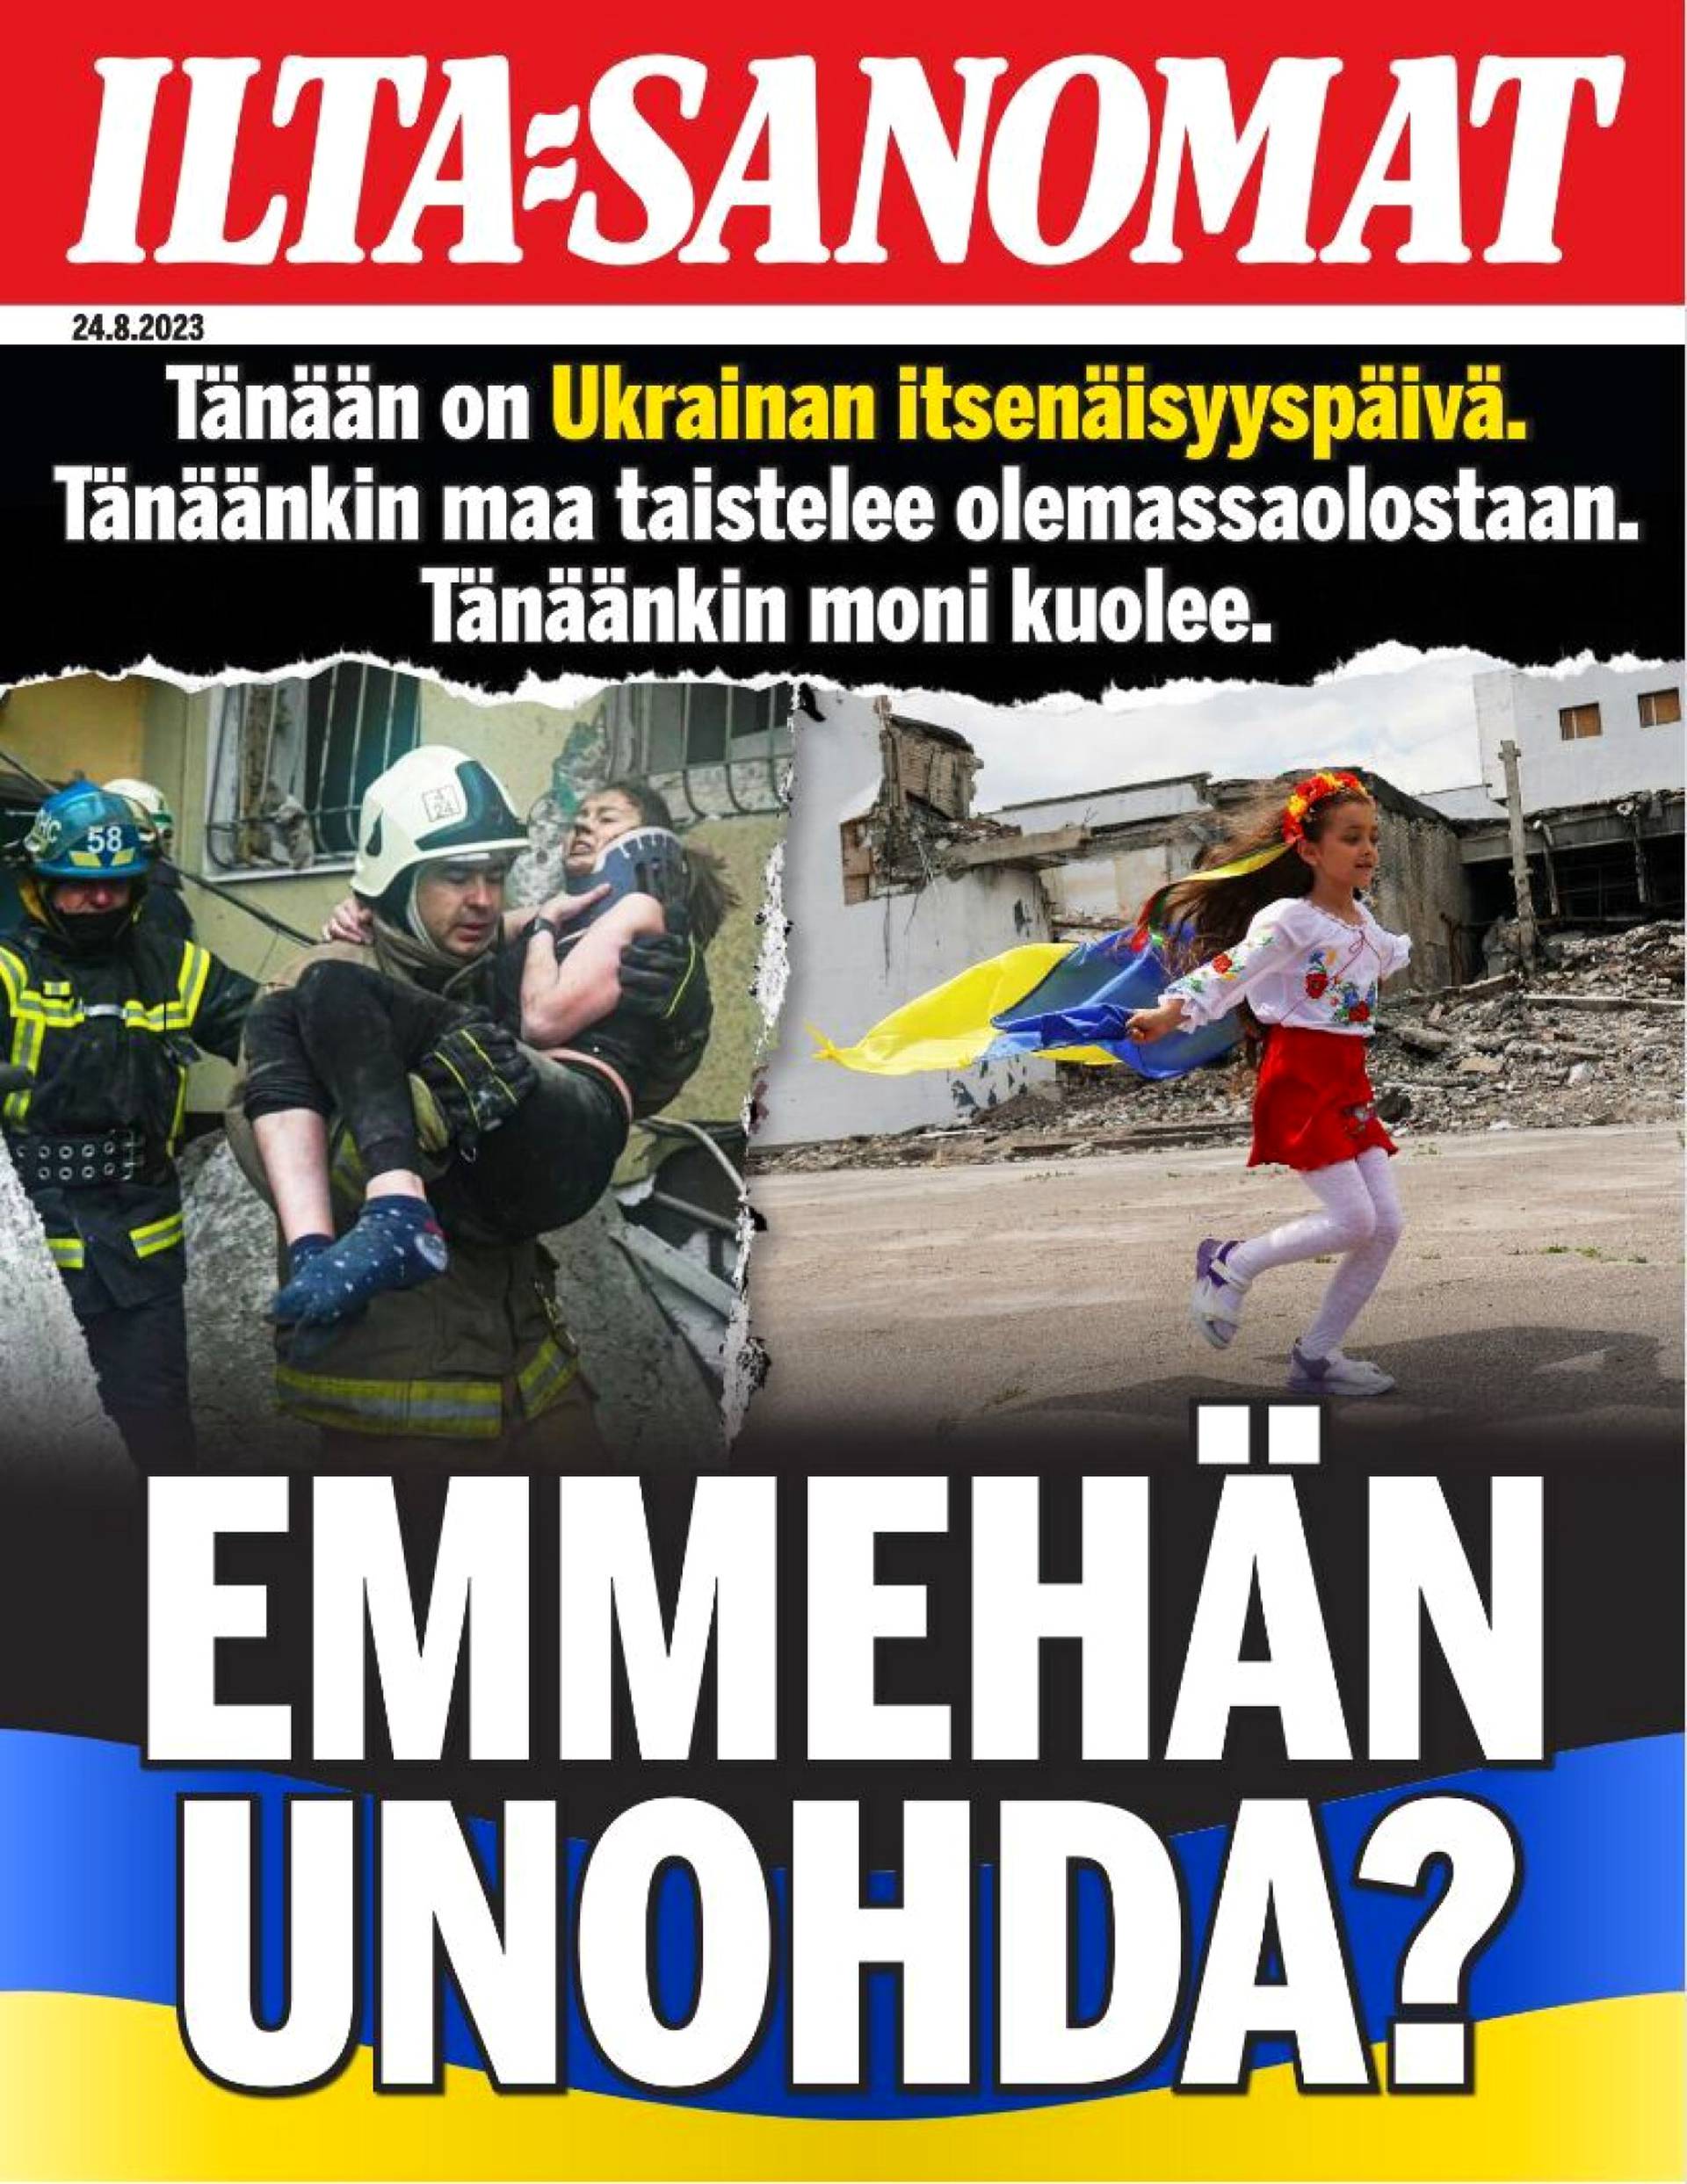 Ilta-Sanomat muistaa erikoislööpillä ukrainalaisten kärsimyksiä tänään torstaina 24.8., joka on Ukrainan itsenäisyyspäivä.